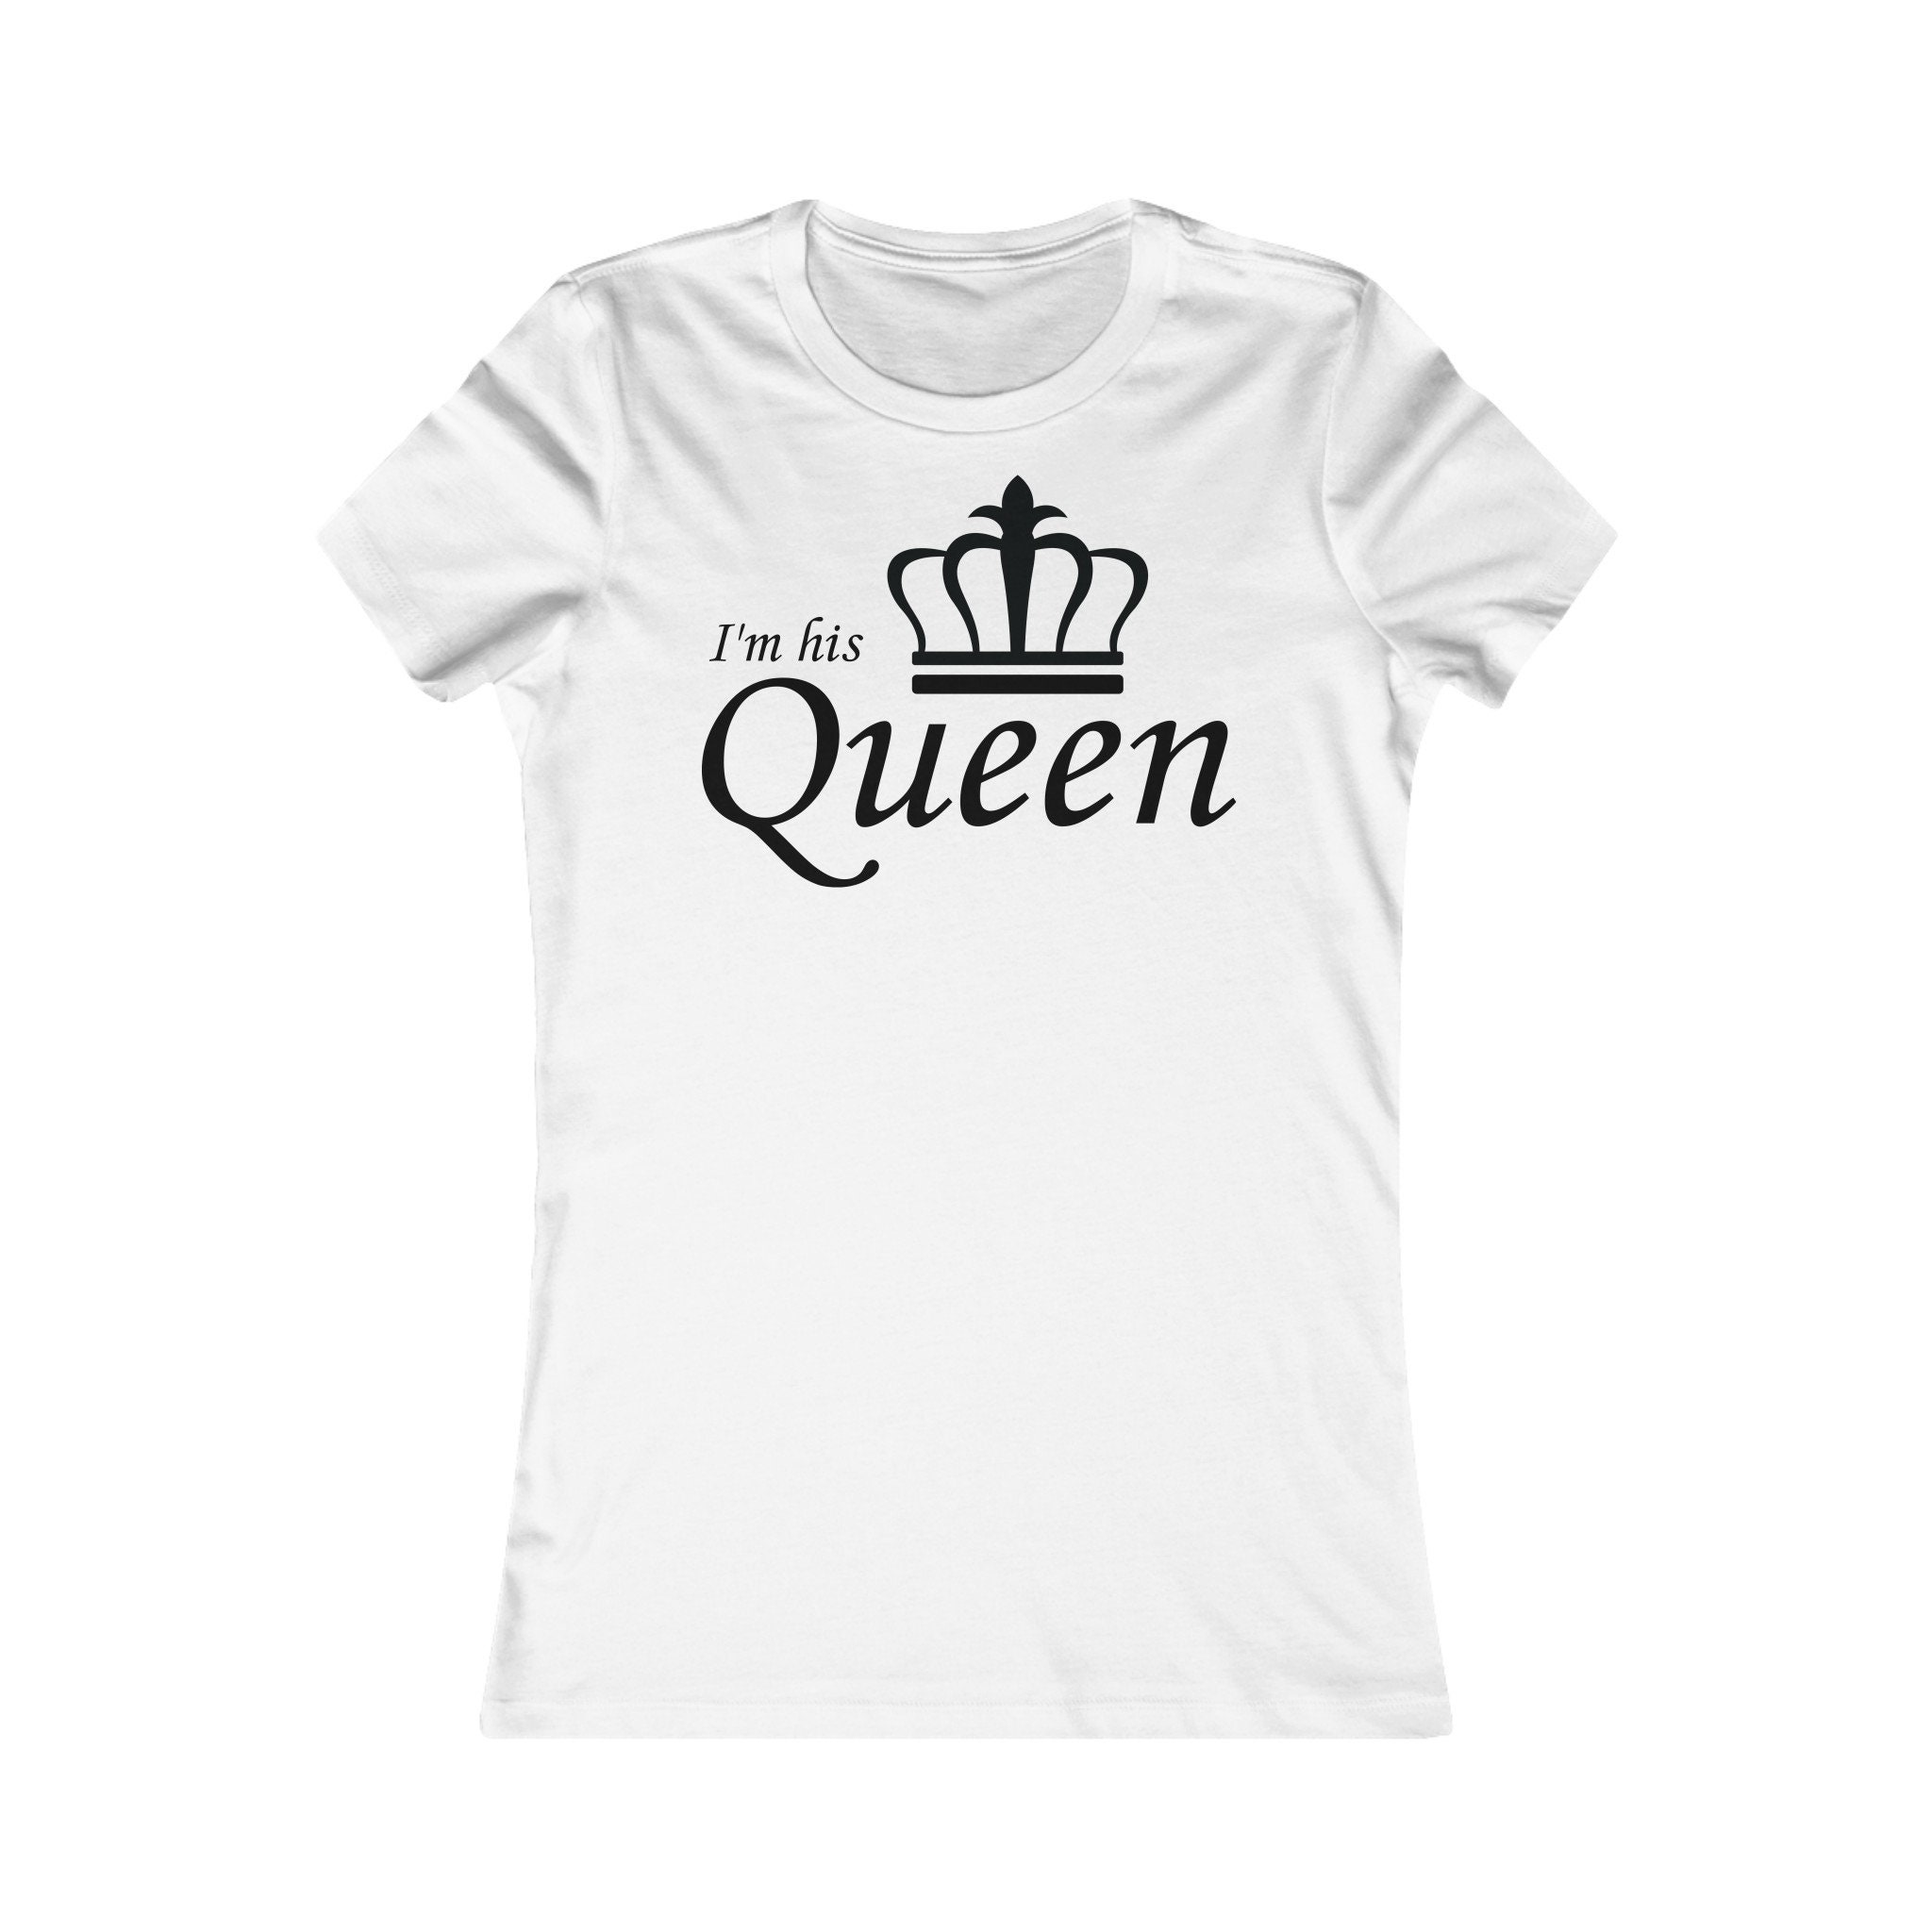 Im his Queen tshirt | Etsy